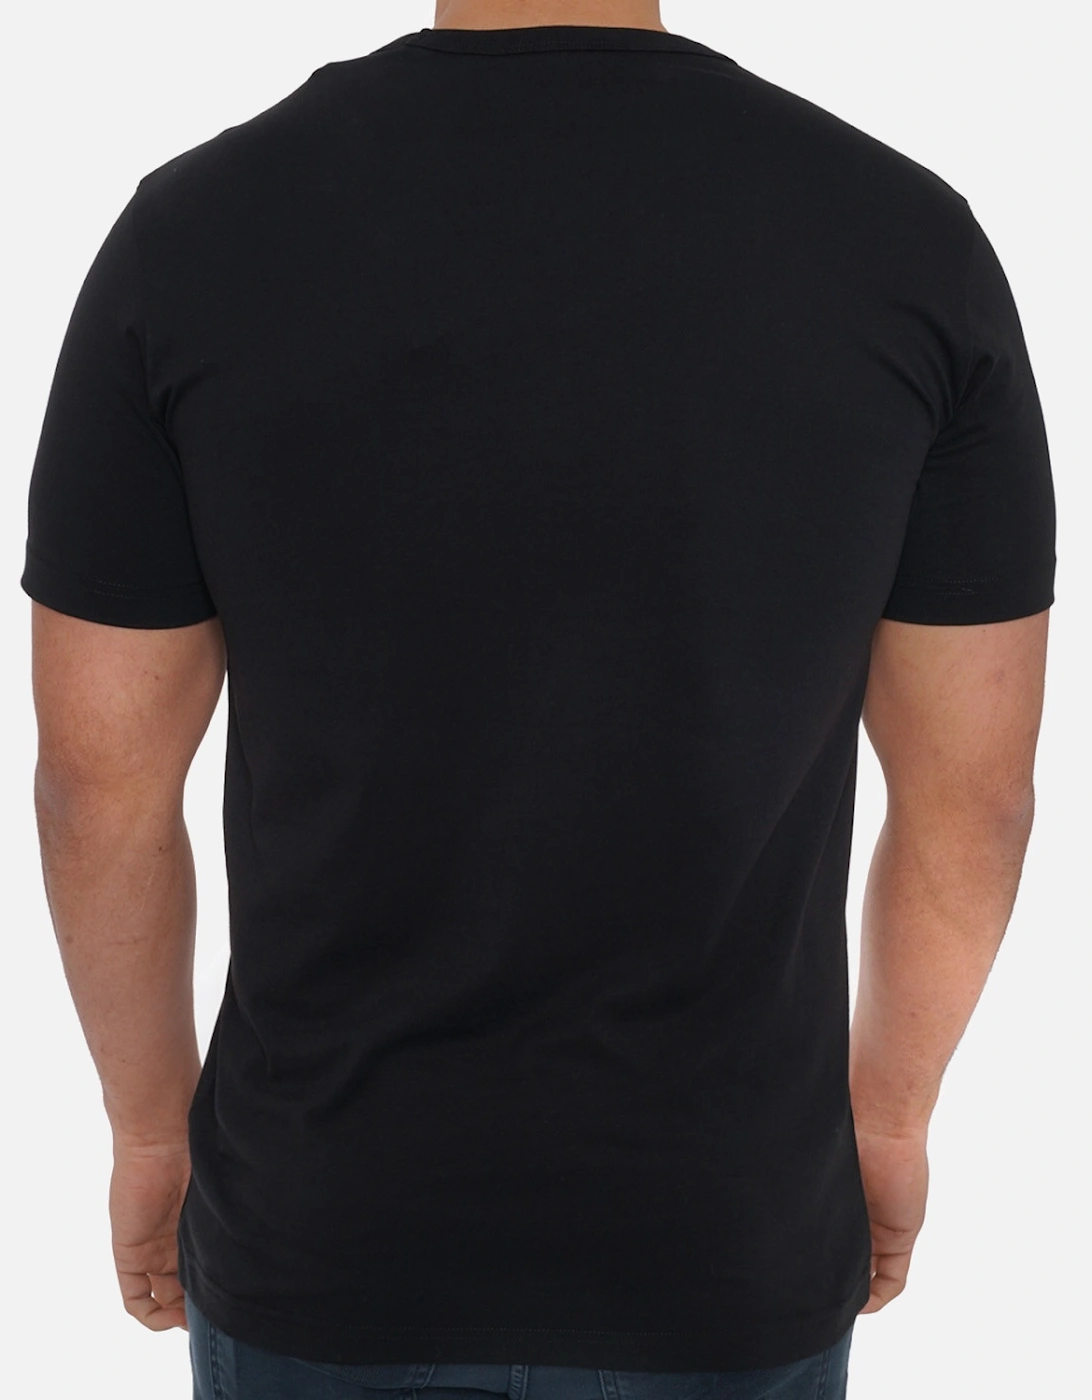 Mens Signature T-Shirt (Black)